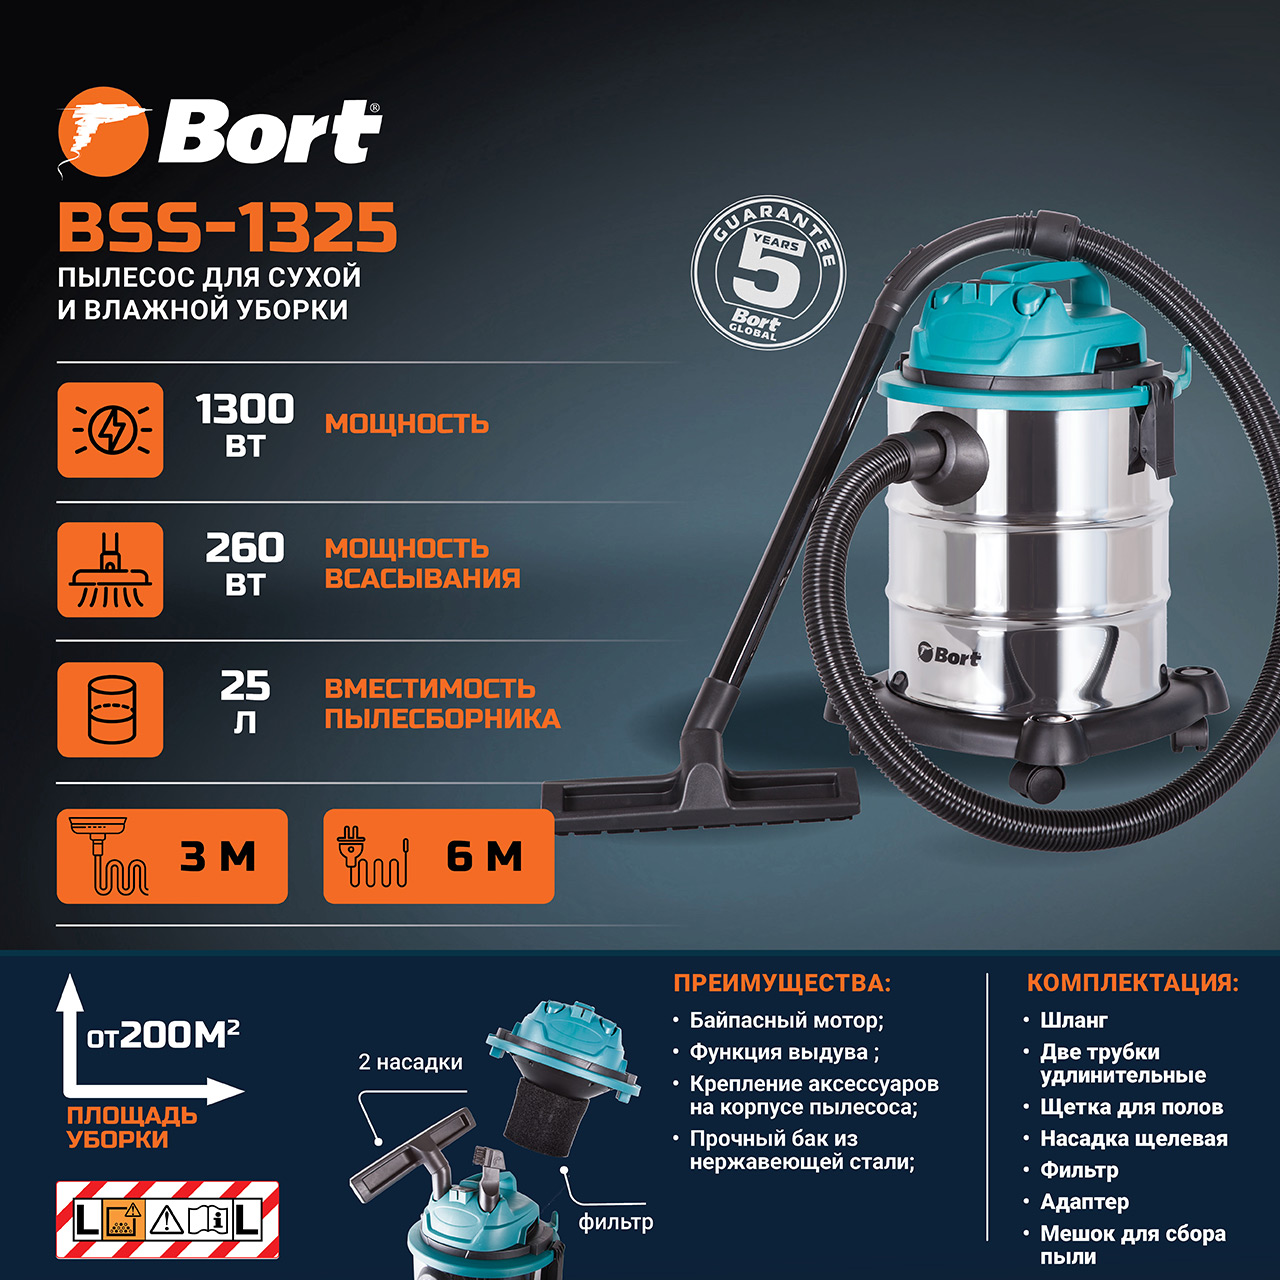 Пылесос для сухой и влажной уборки BORT BSS-1325